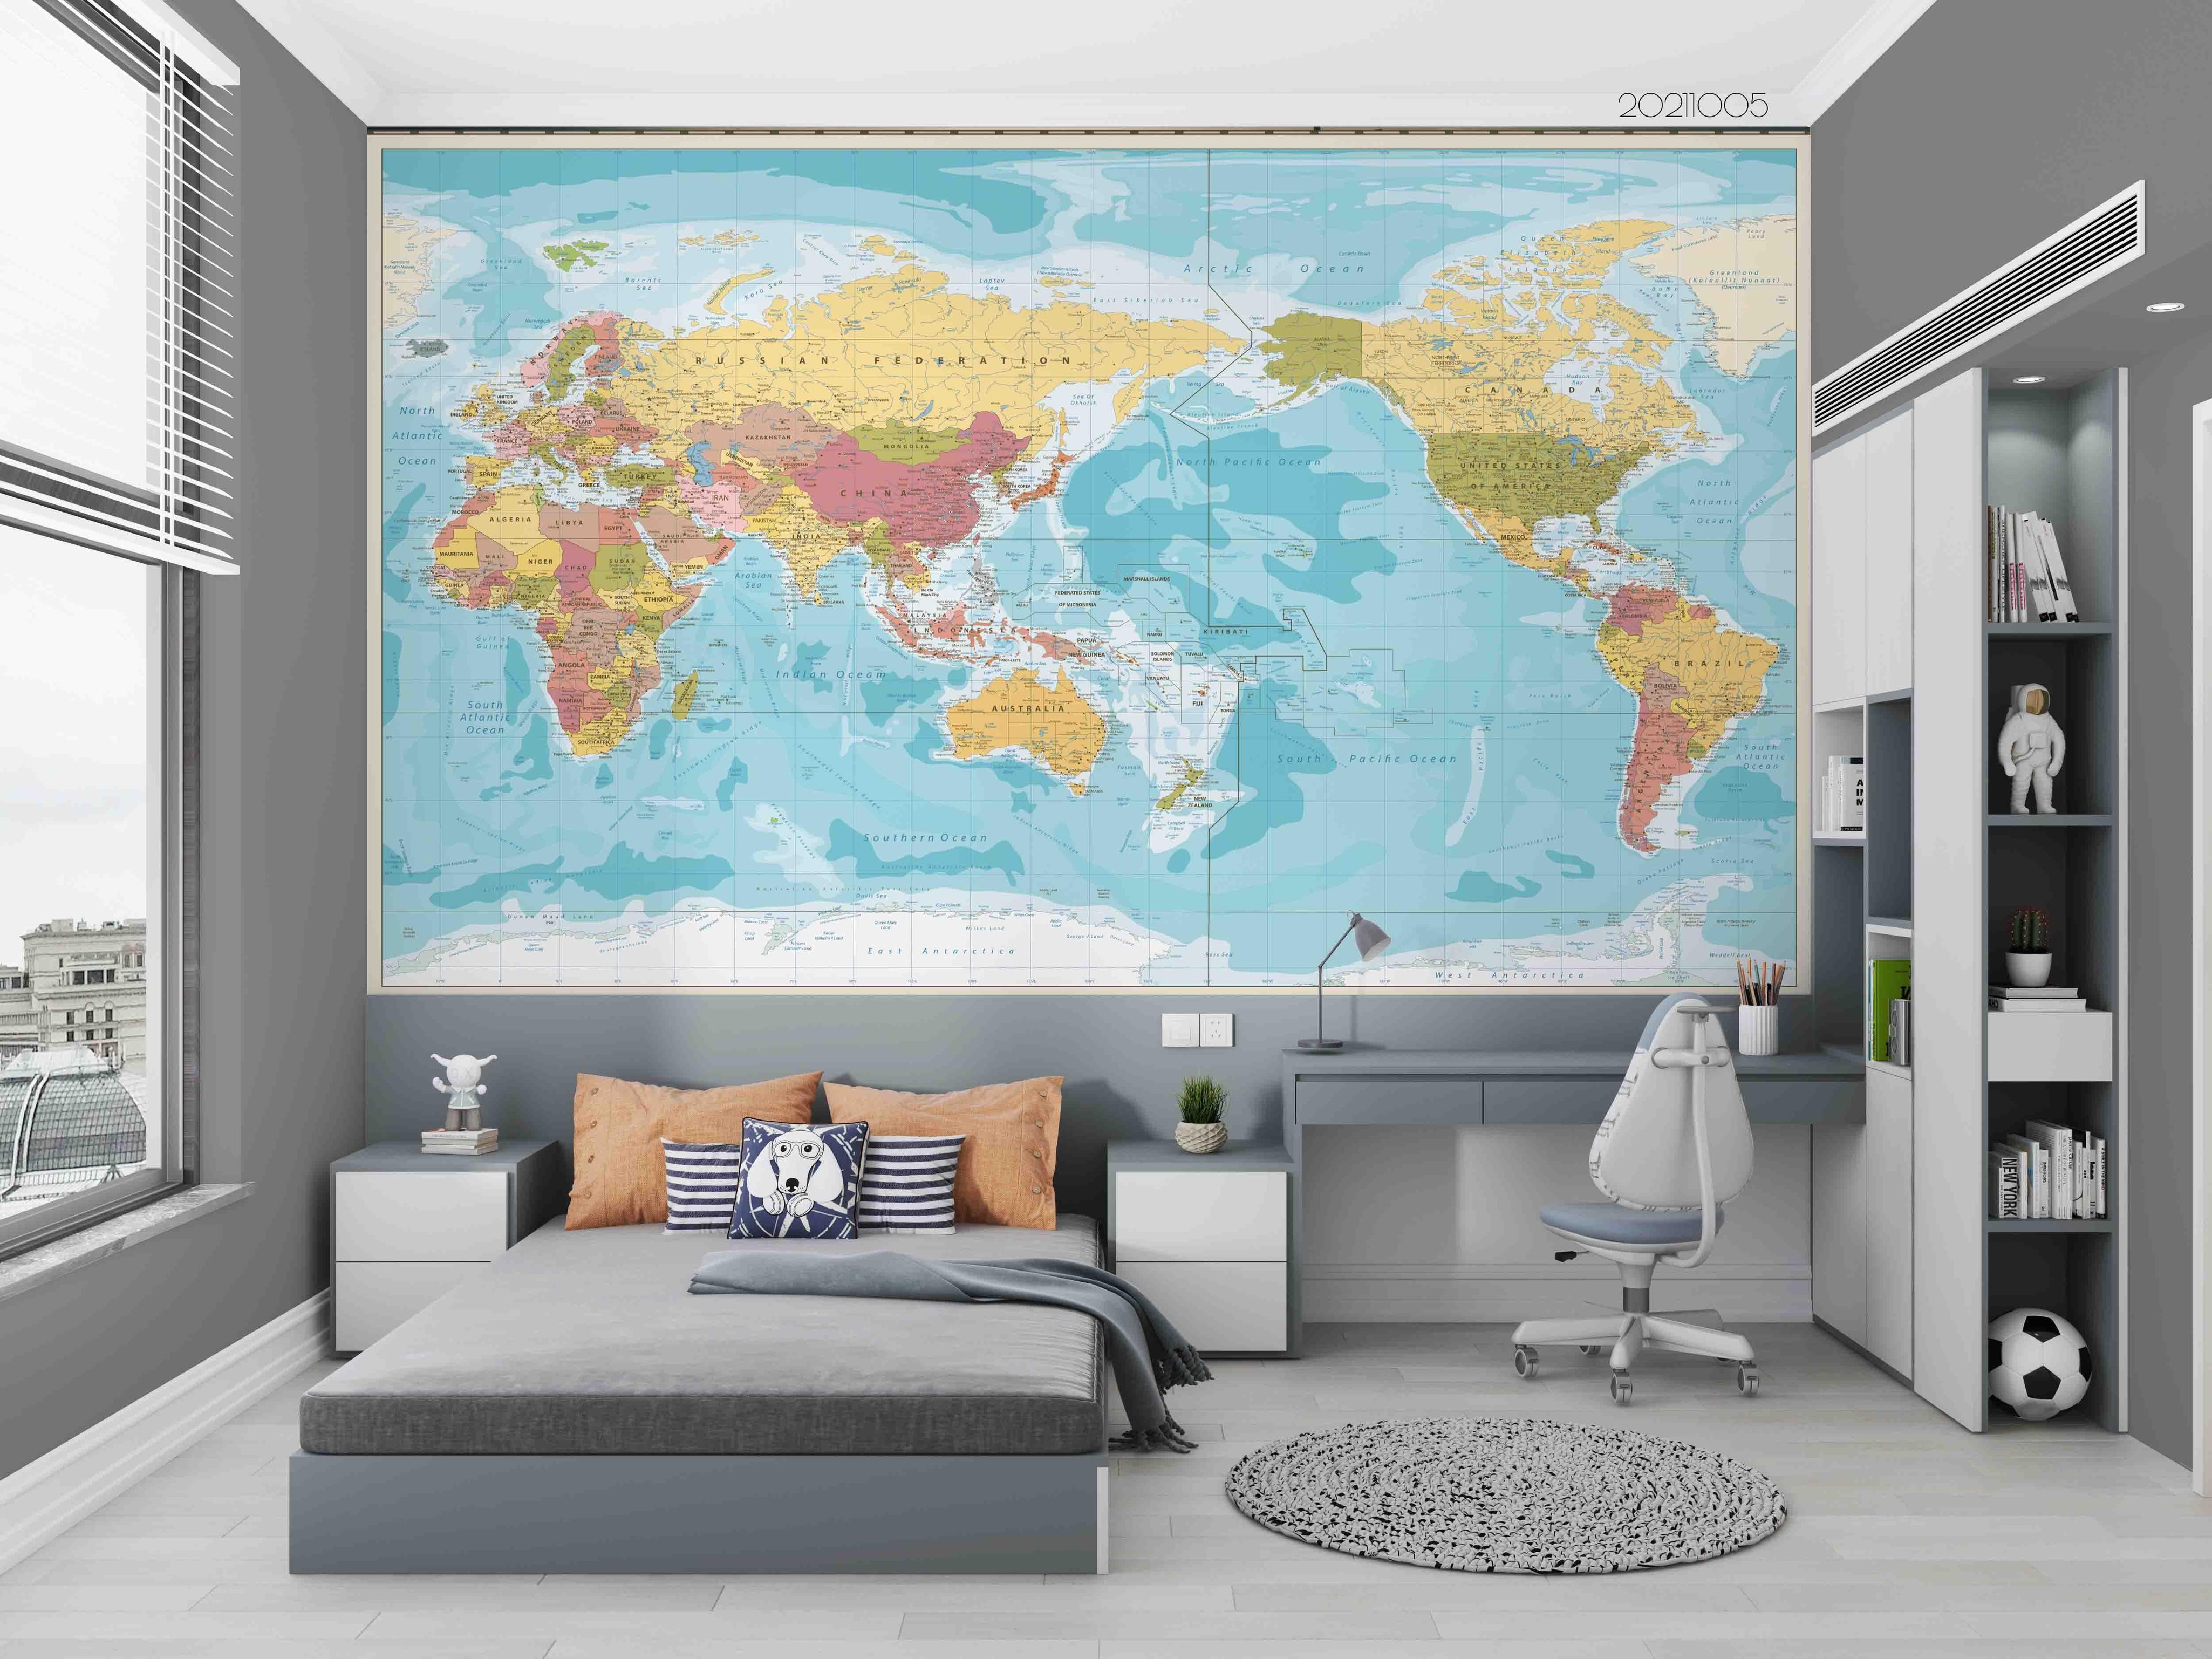 3D World Map Wall Mural Wallpaper LQH 602- Jess Art Decoration